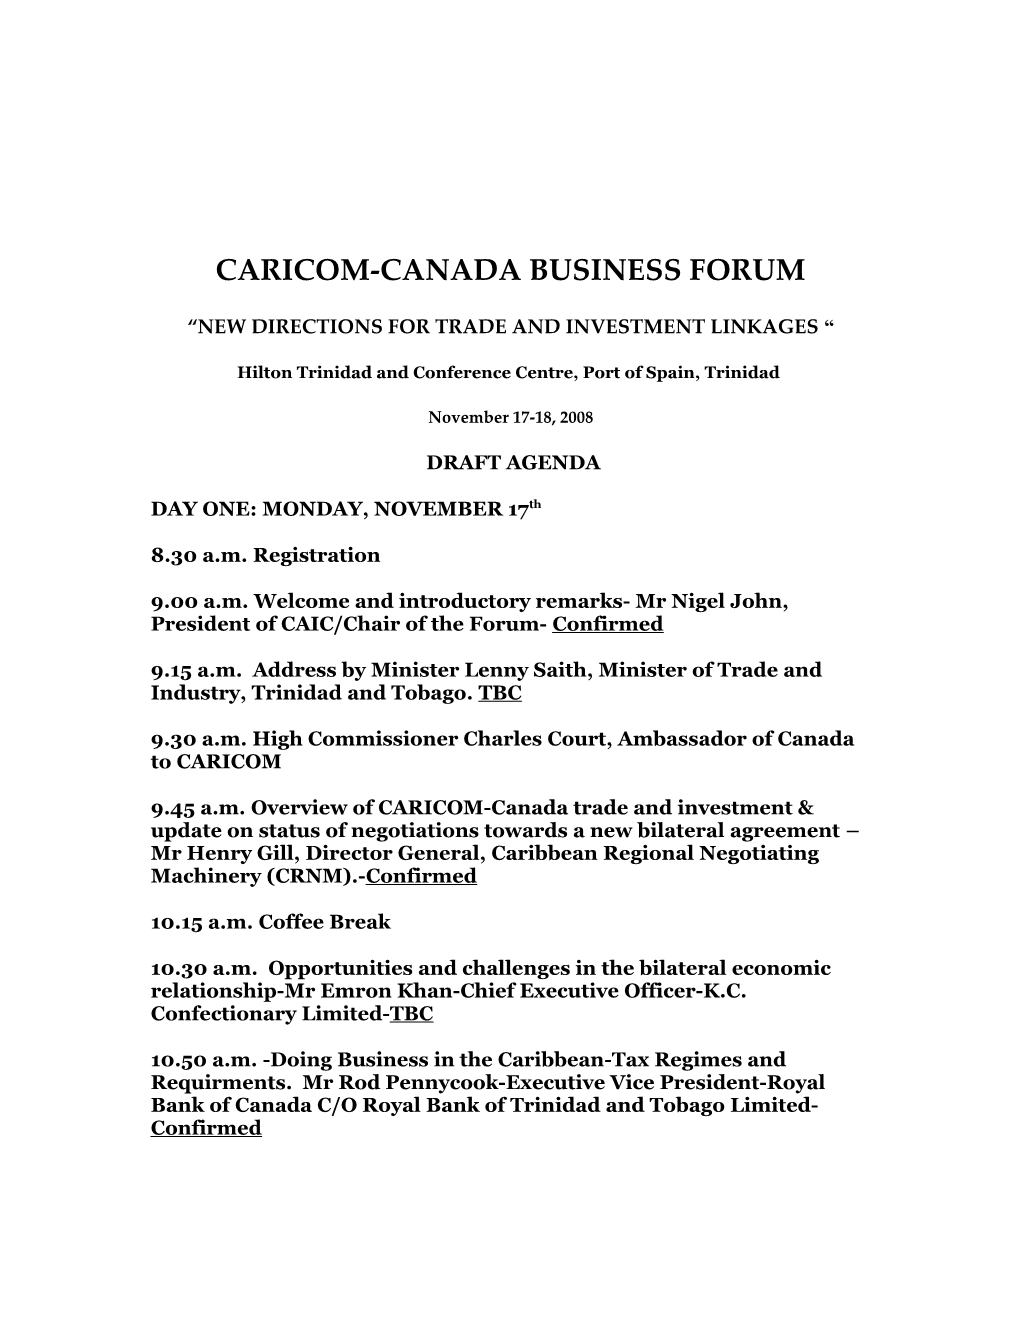 Caricom-Canada Business Forum